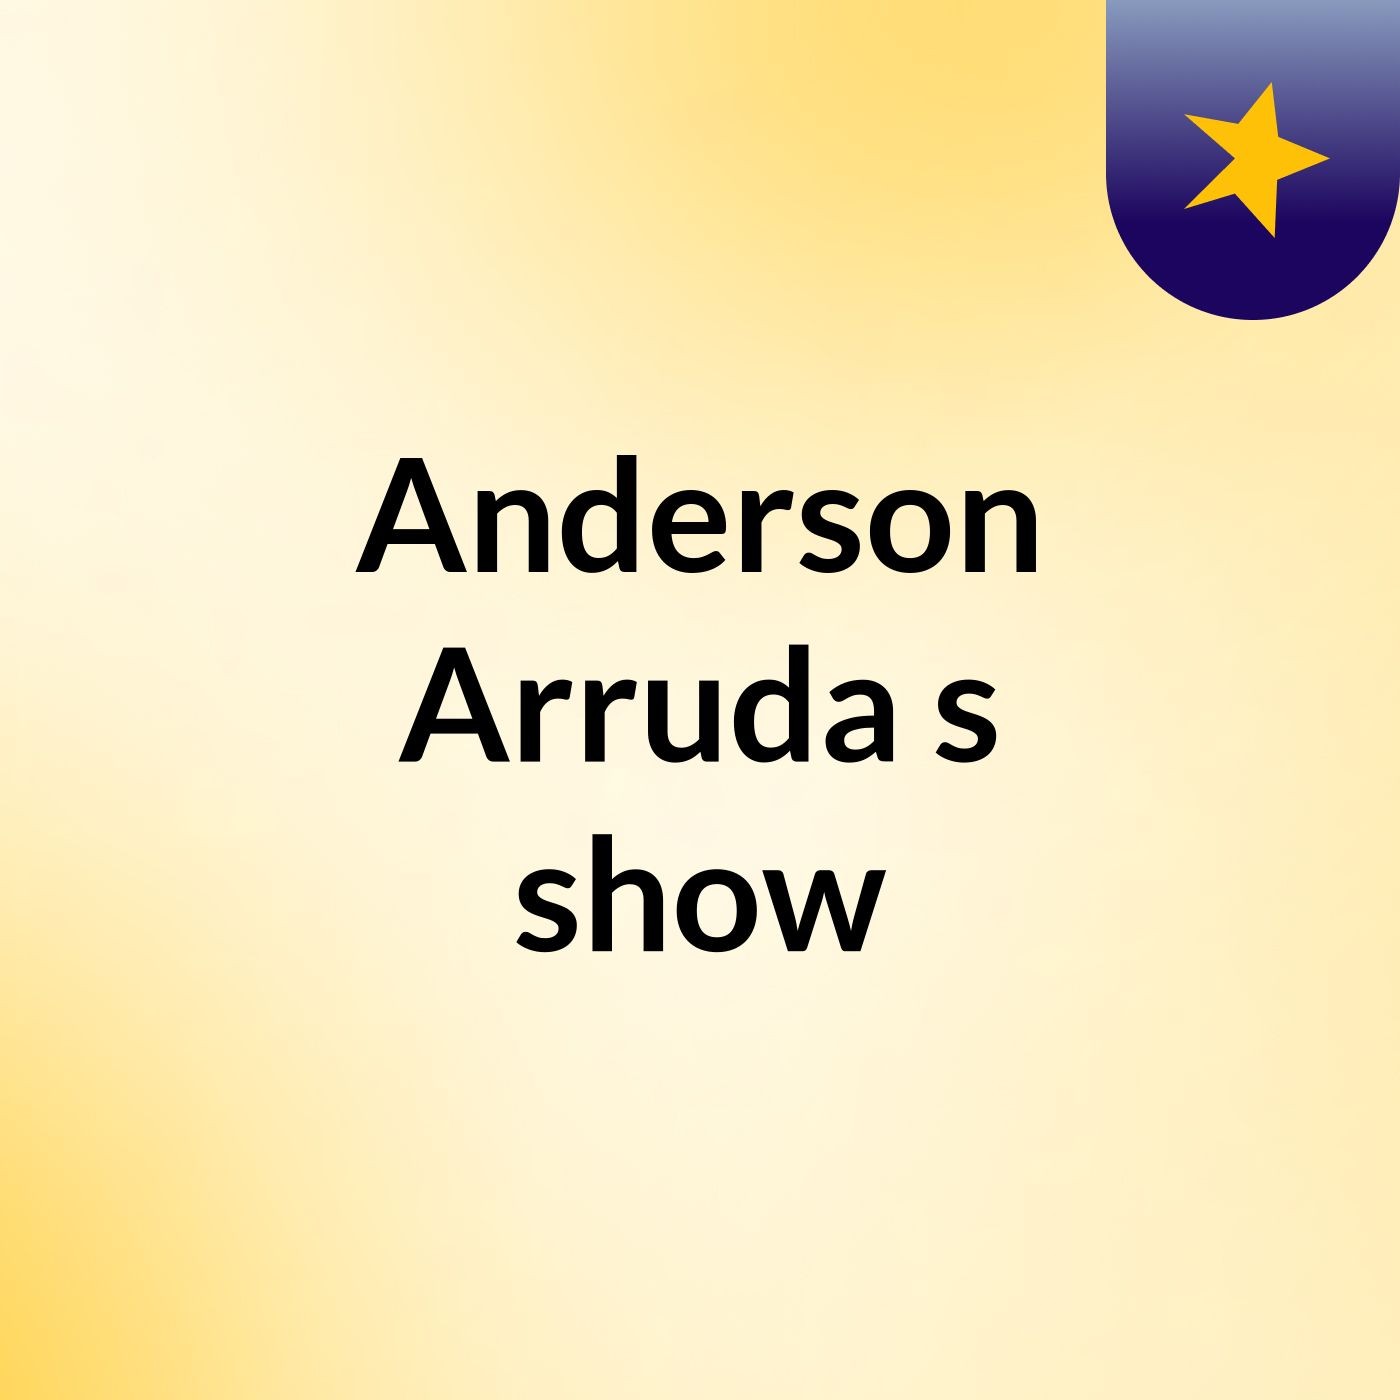 Anderson Arruda's show